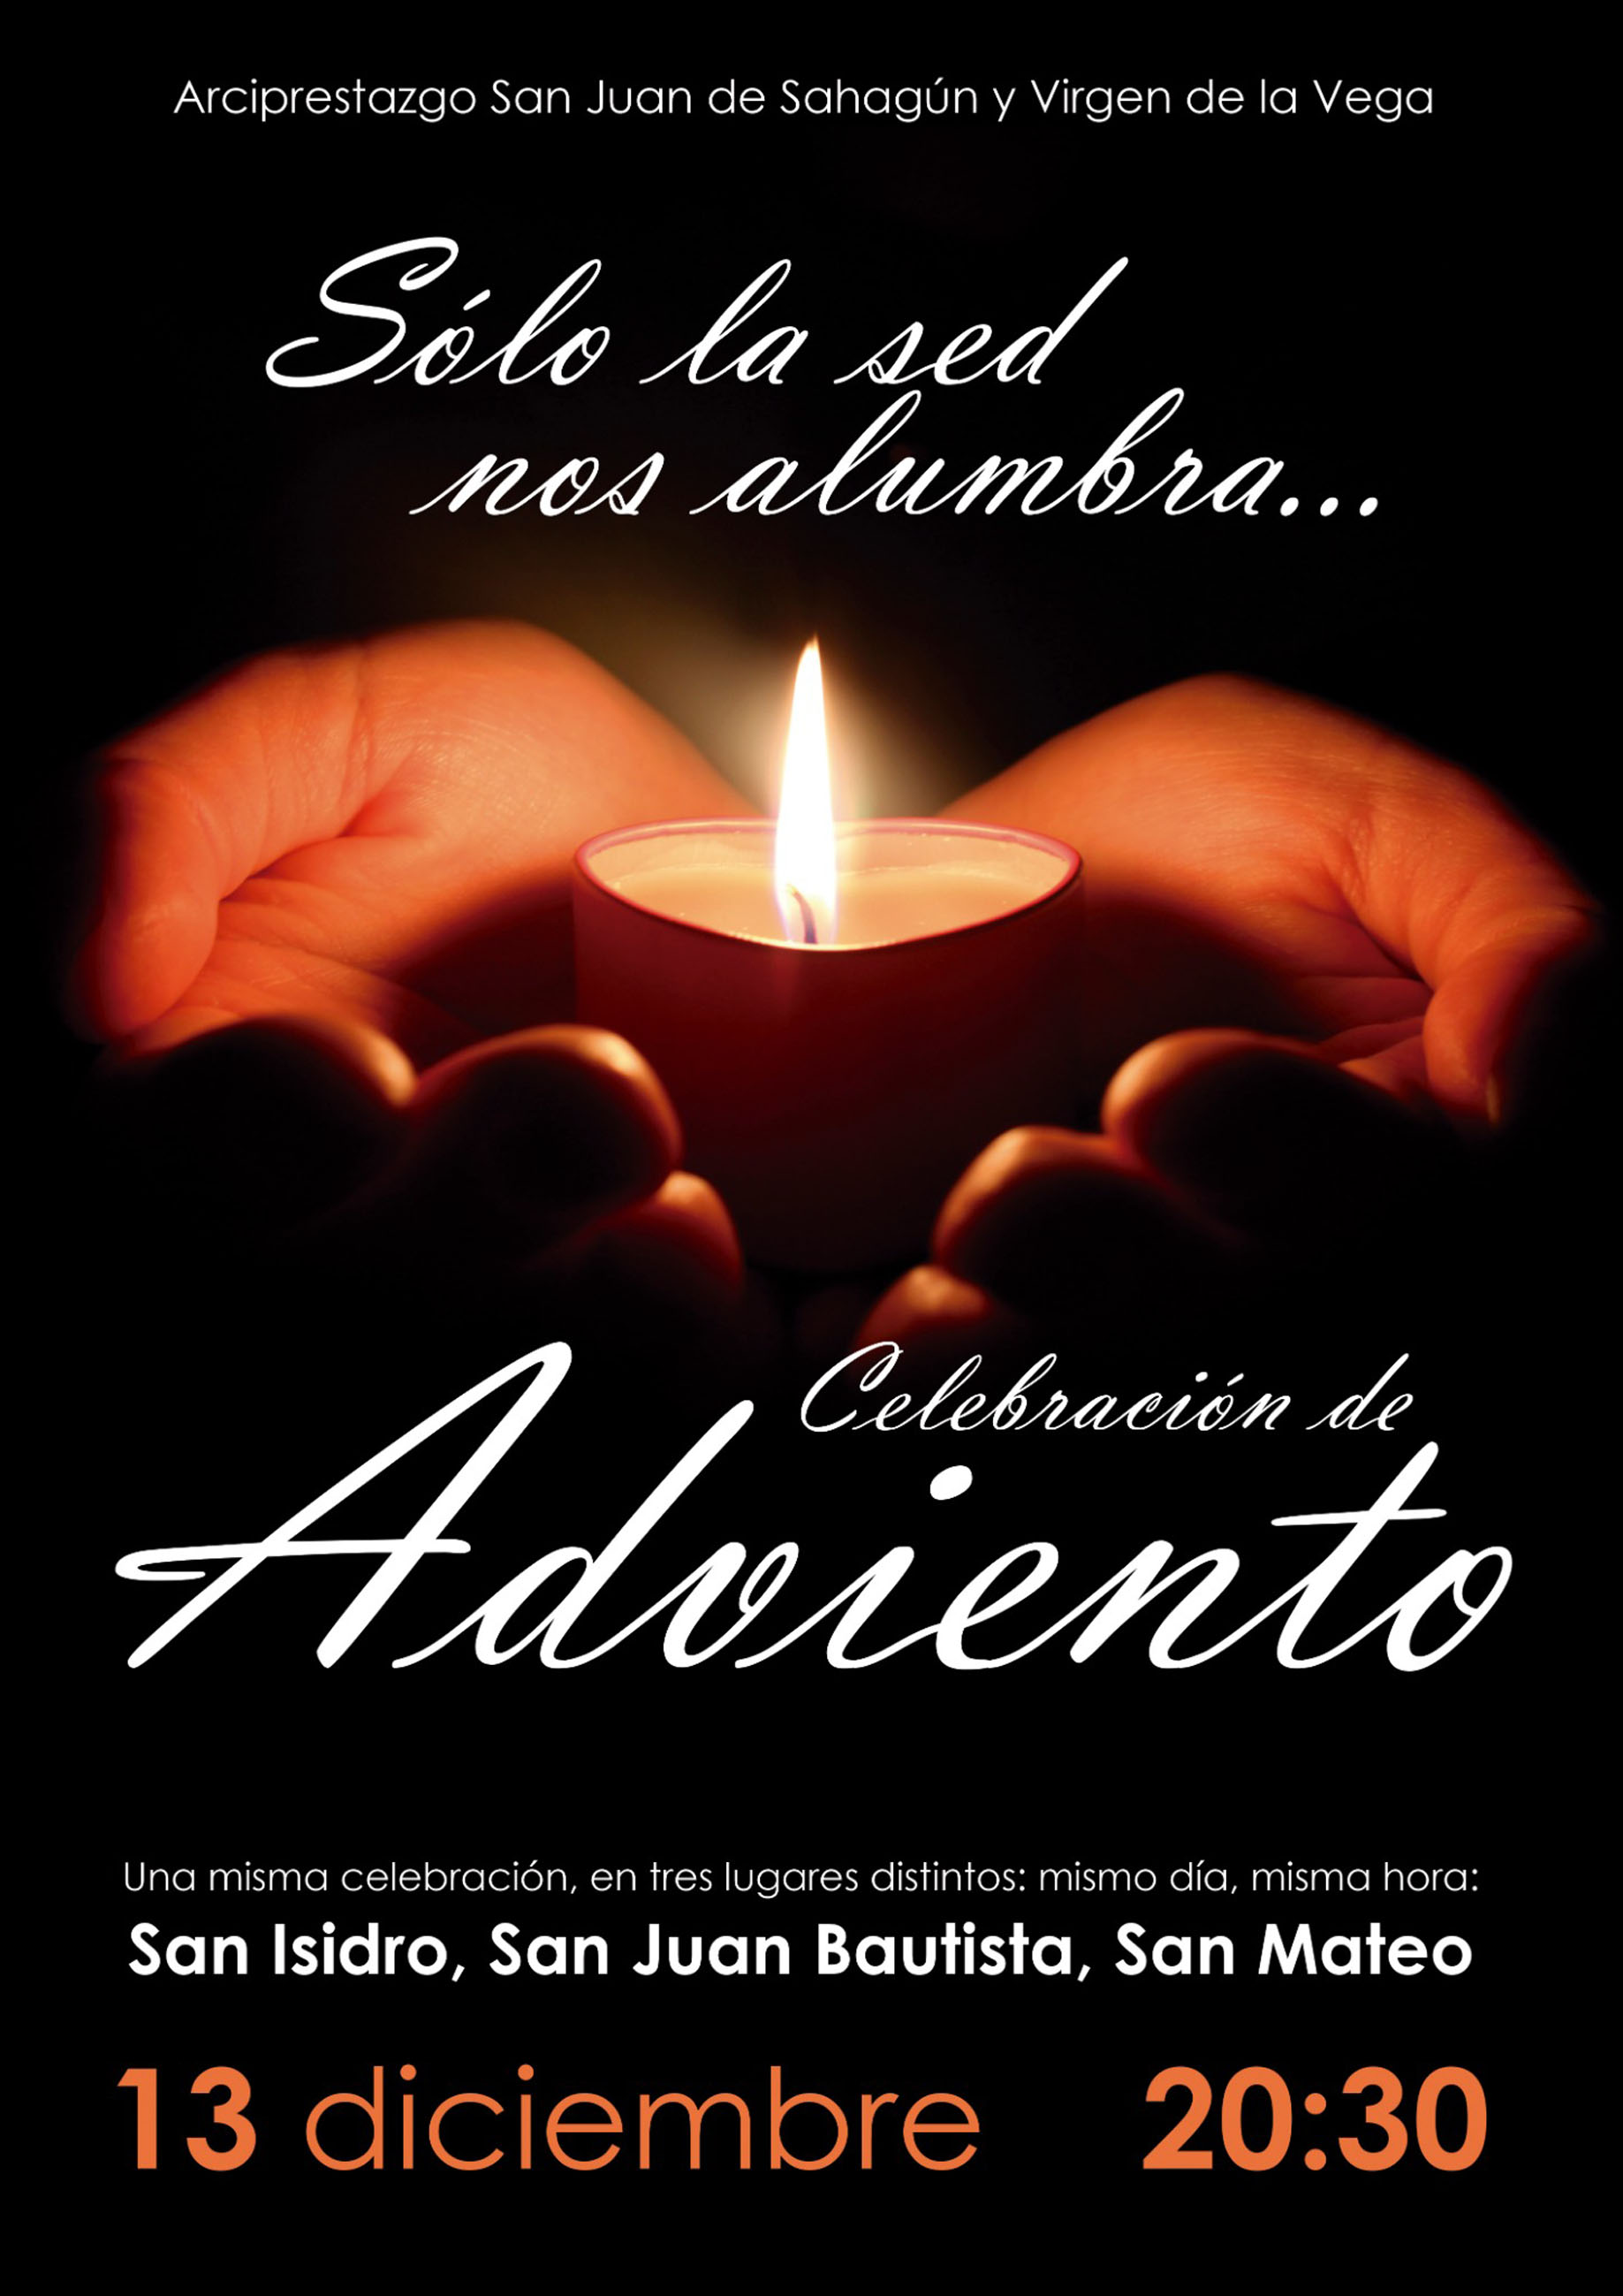 Celebración de Adviento en el arciprestazgo San Juan de Sahagún-Virgen